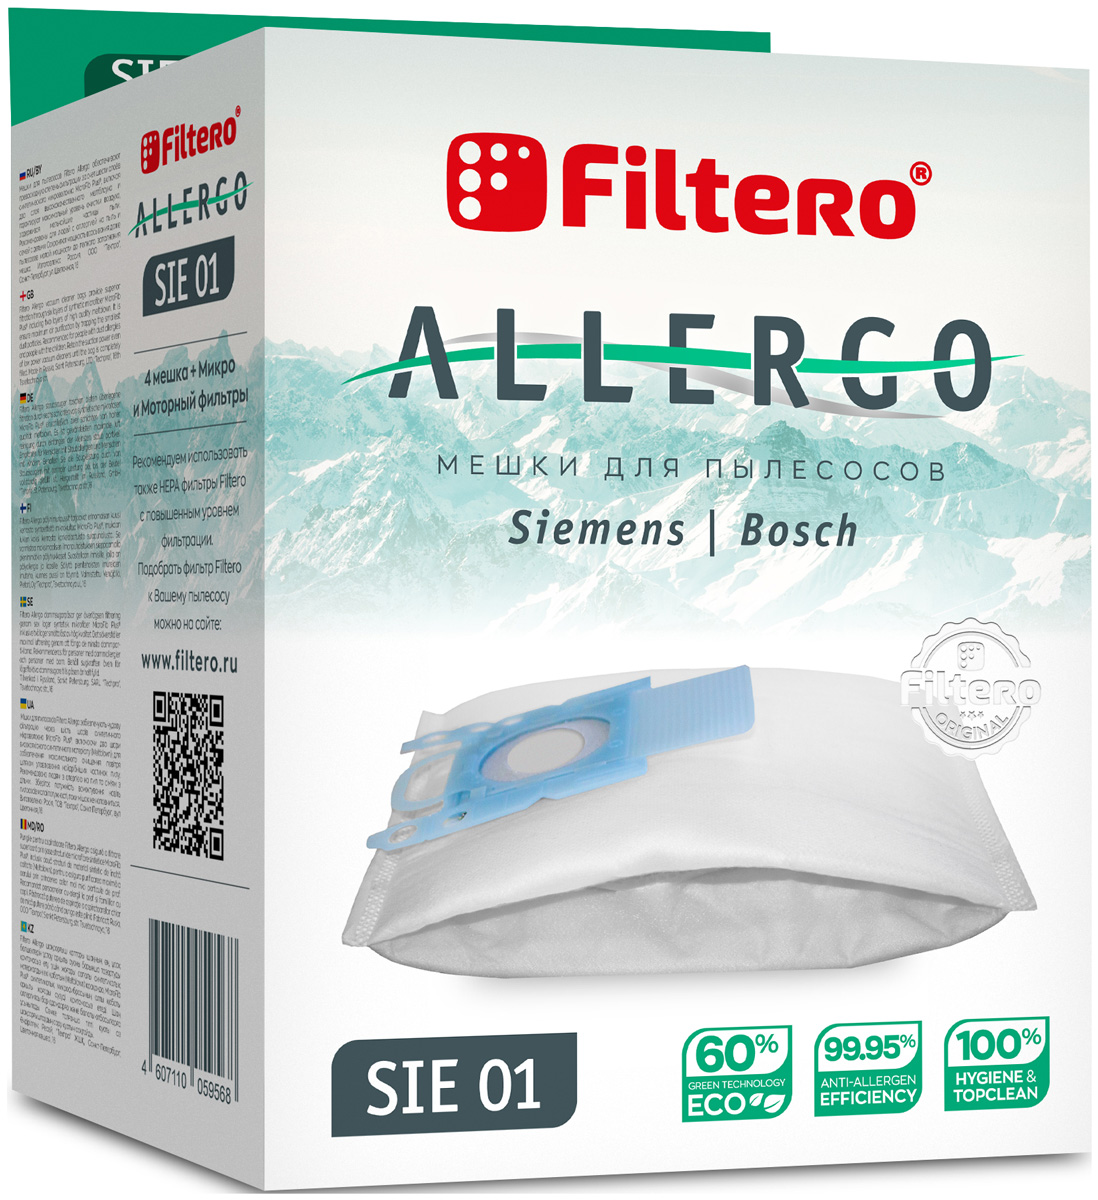 мешки пылесборники для siemens bosch filtero allergo sie 01 4 штуки Пылесборники Filtero SIE 01 Allergo 4 шт. + моторный фильтр и микрофильтр